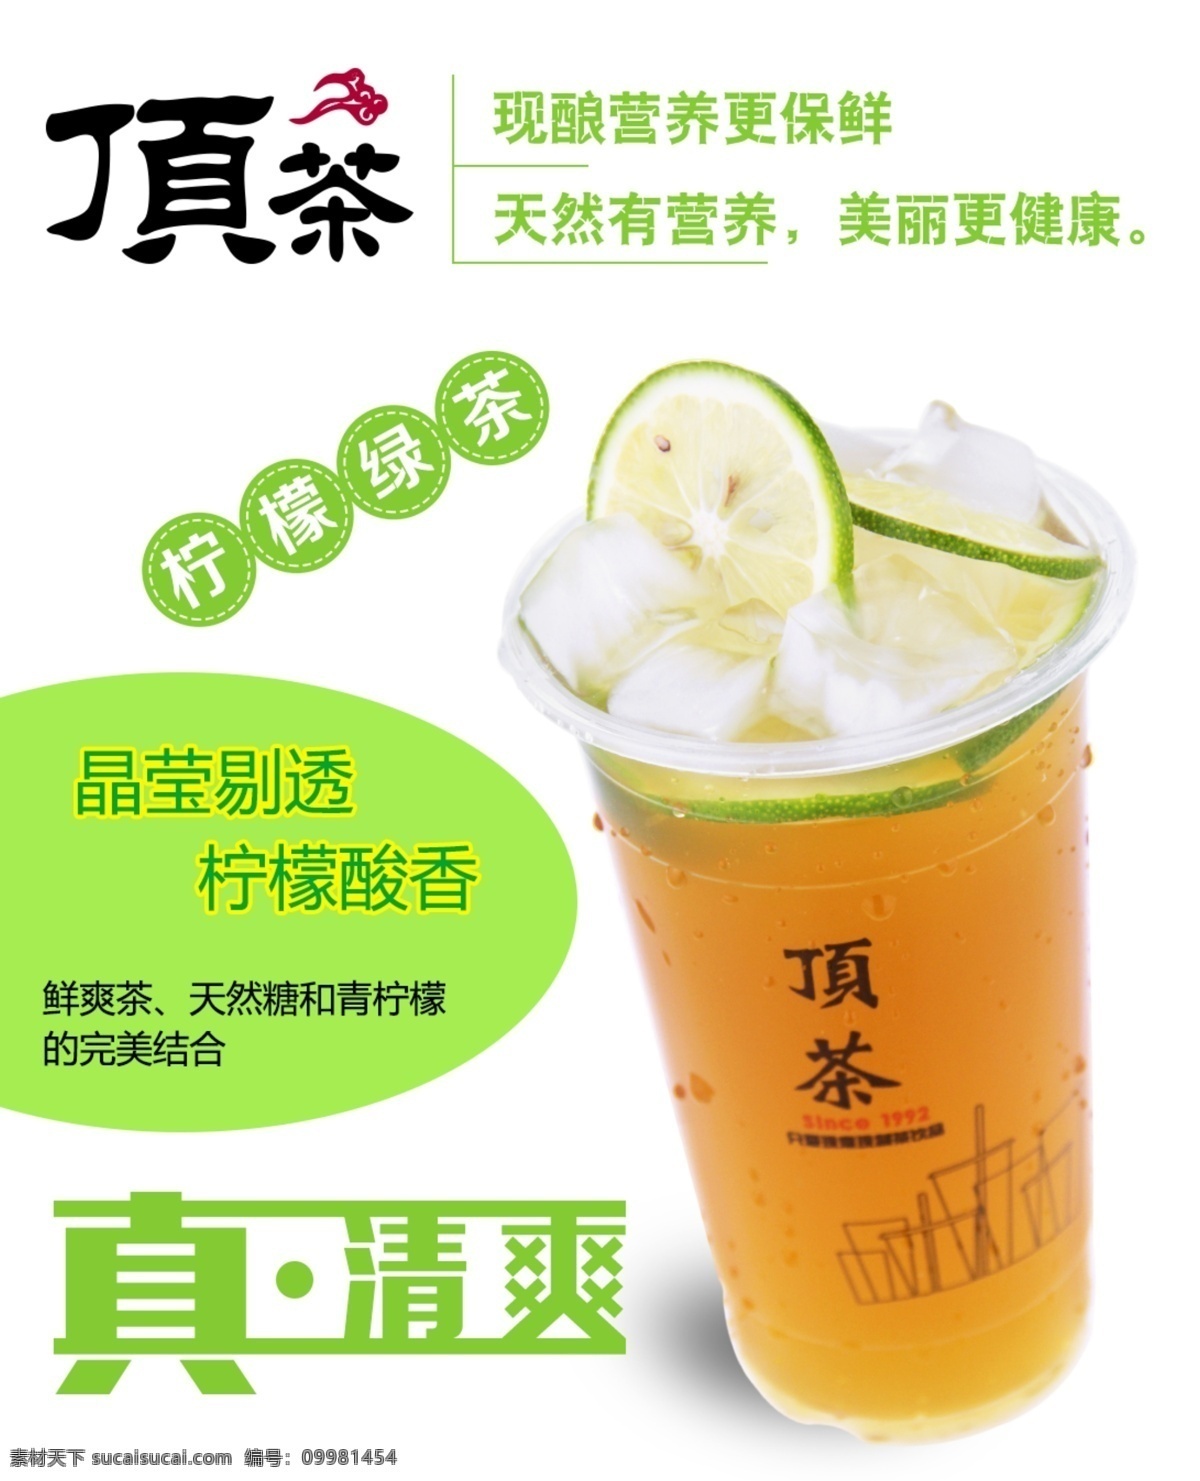 奶茶清新海报 高清图片 芒果 美食 奶茶 奶茶广告 奶茶饮品 饮料 广告 模板下载 饮品 草莓 白色